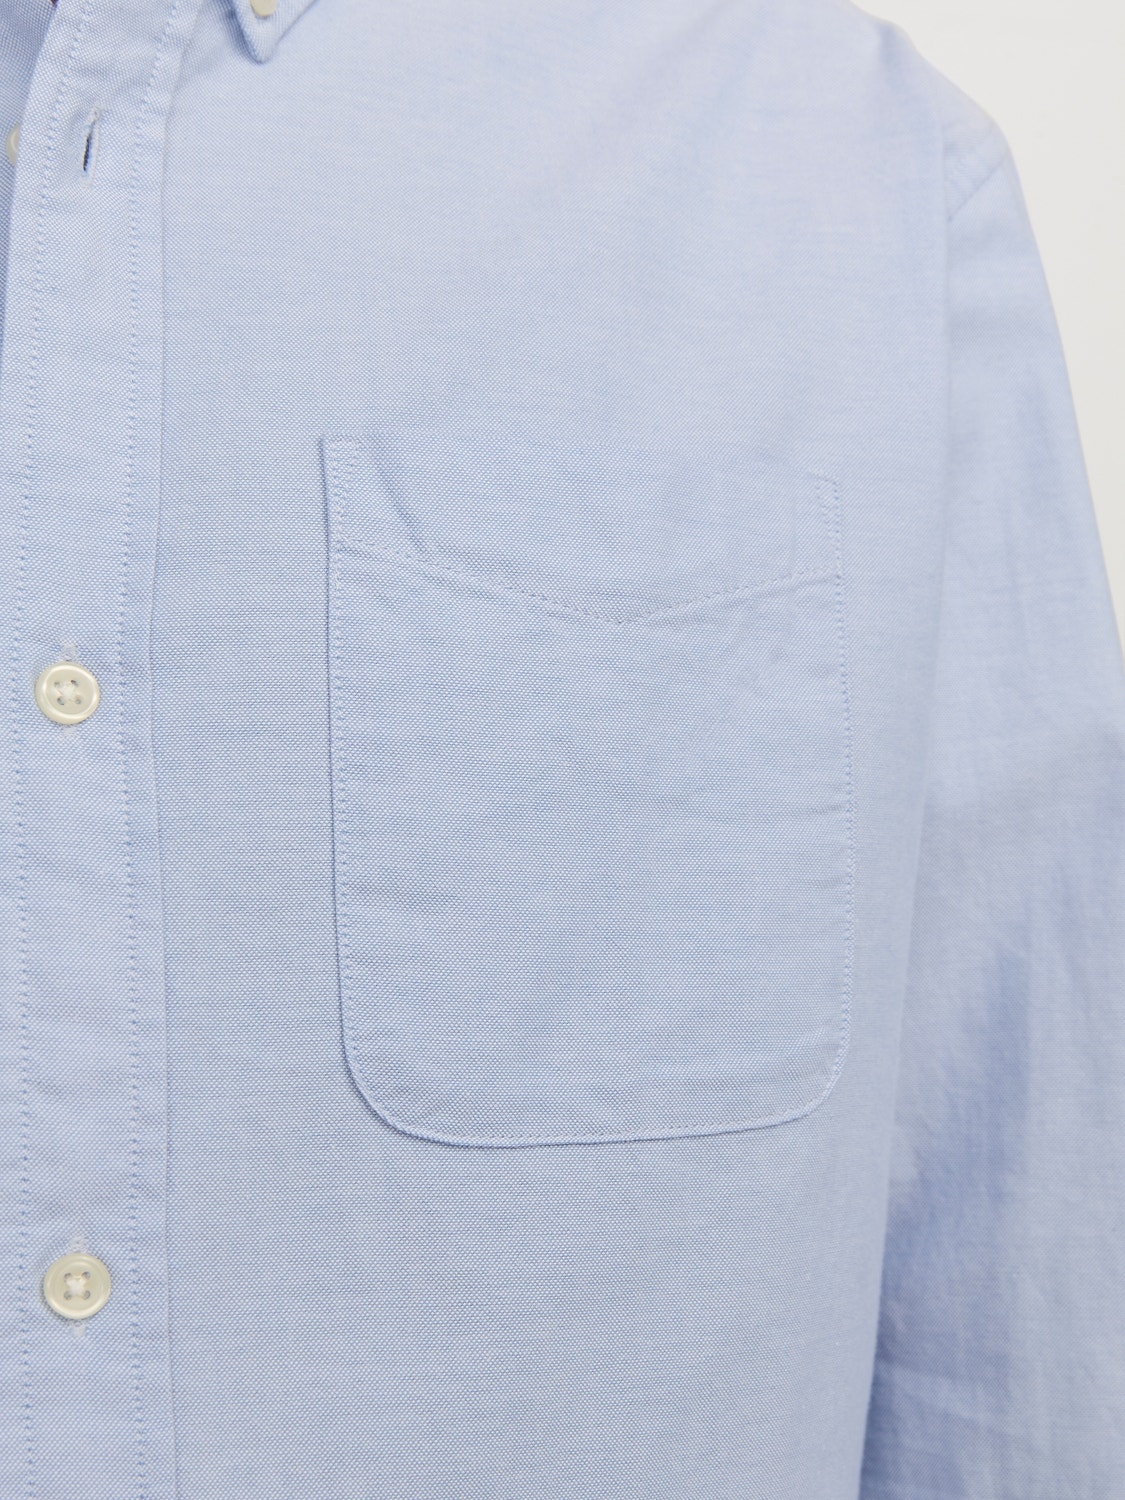 Jack & Jones Slim Fit Casual shirt -Cashmere Blue - 12182486